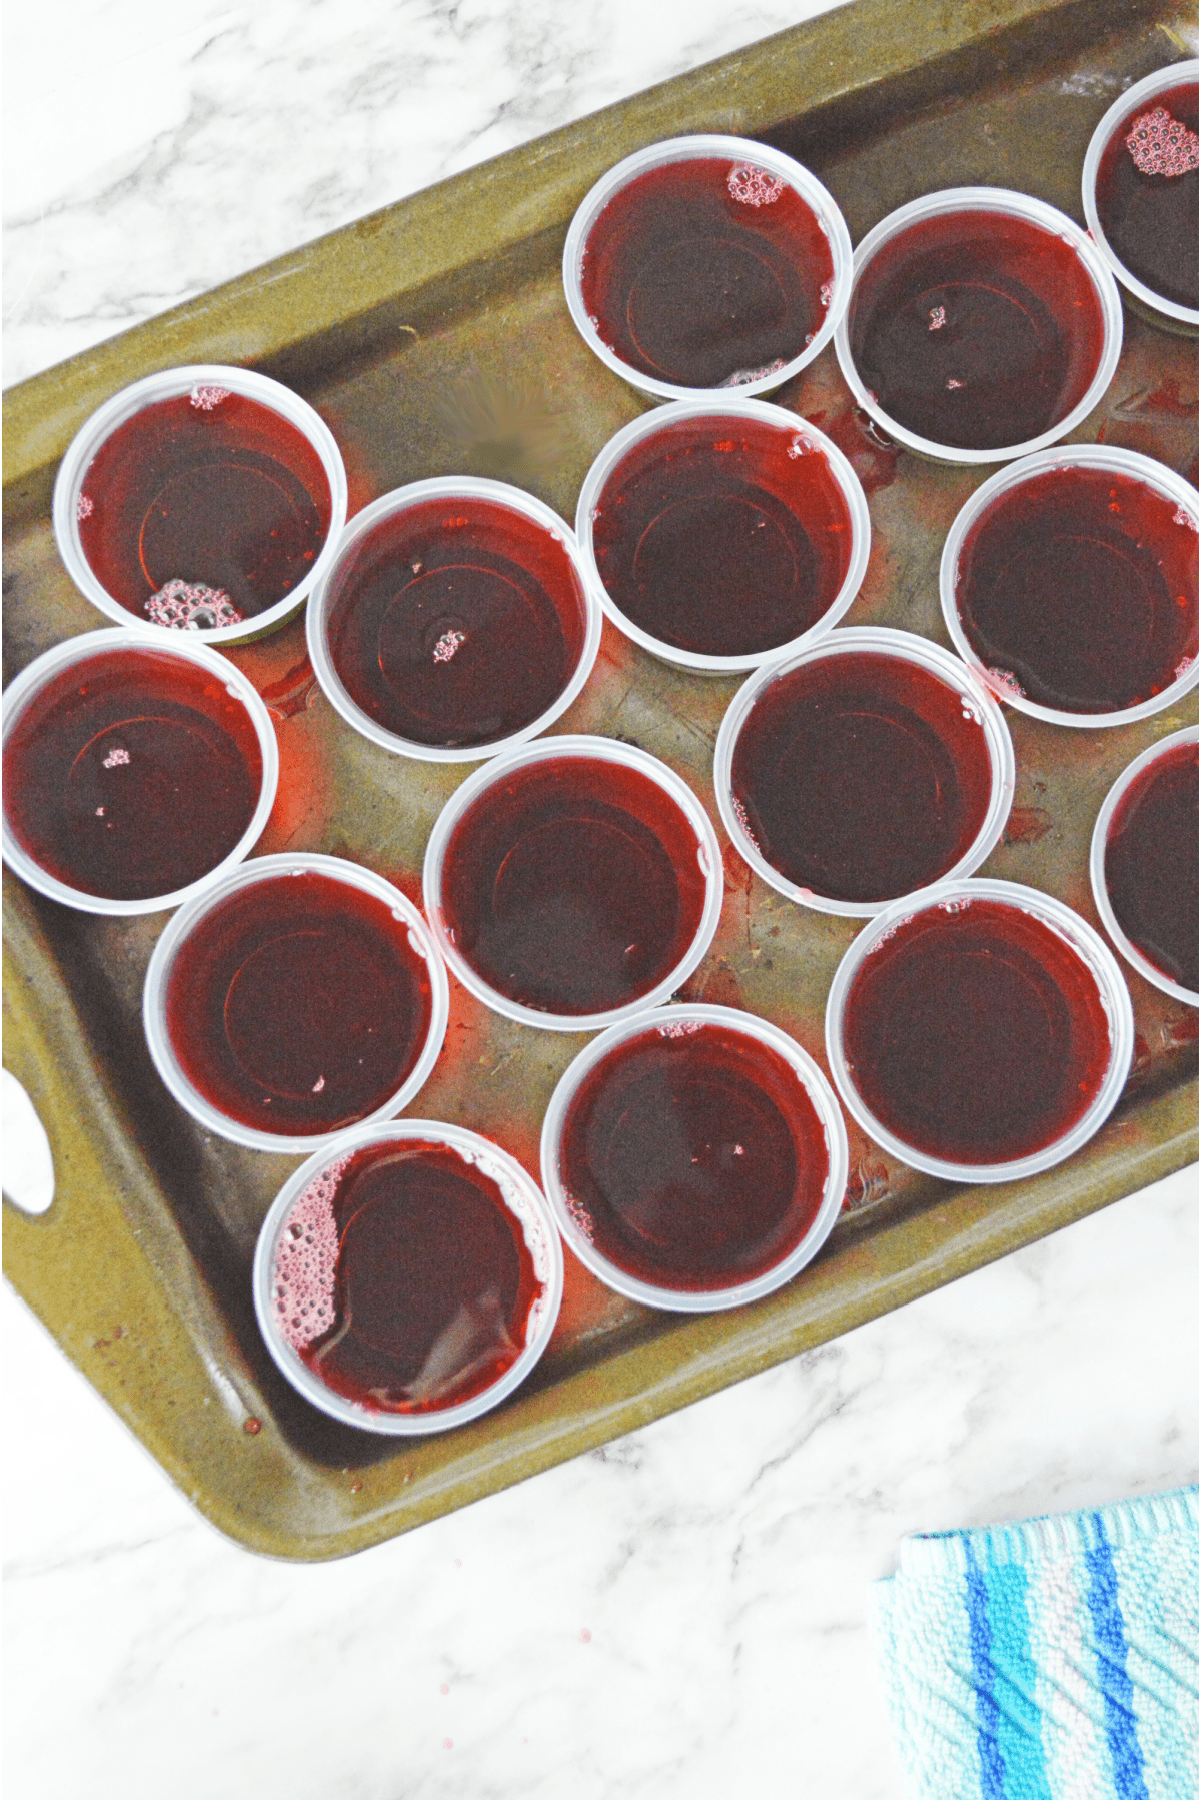 Red jello in plastic cups